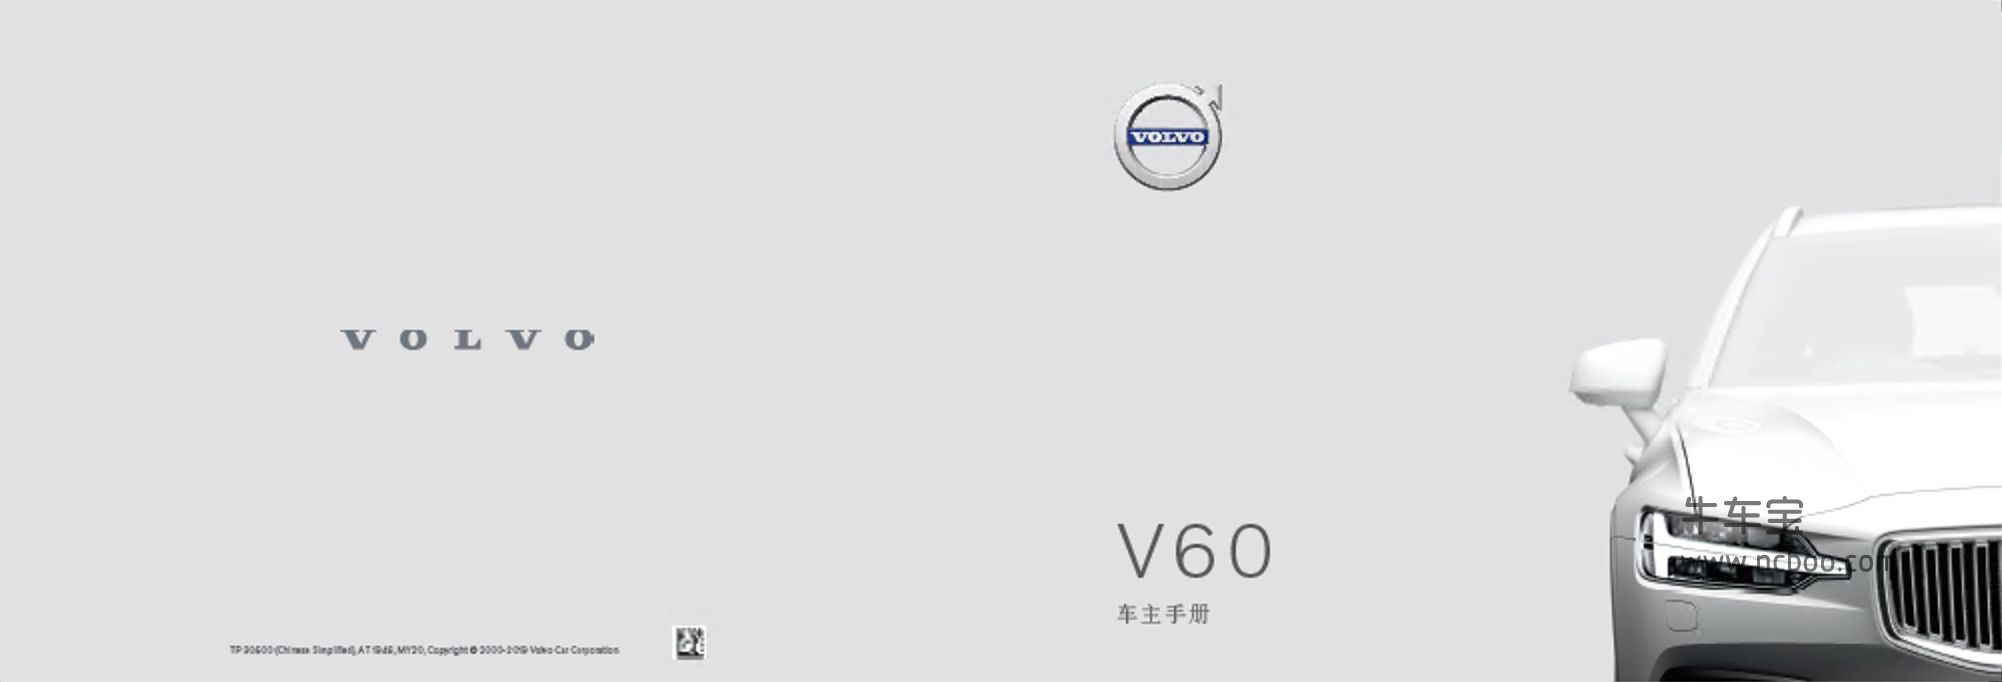 2020款沃尔沃V60产品使用说明书pdf车主手册下载